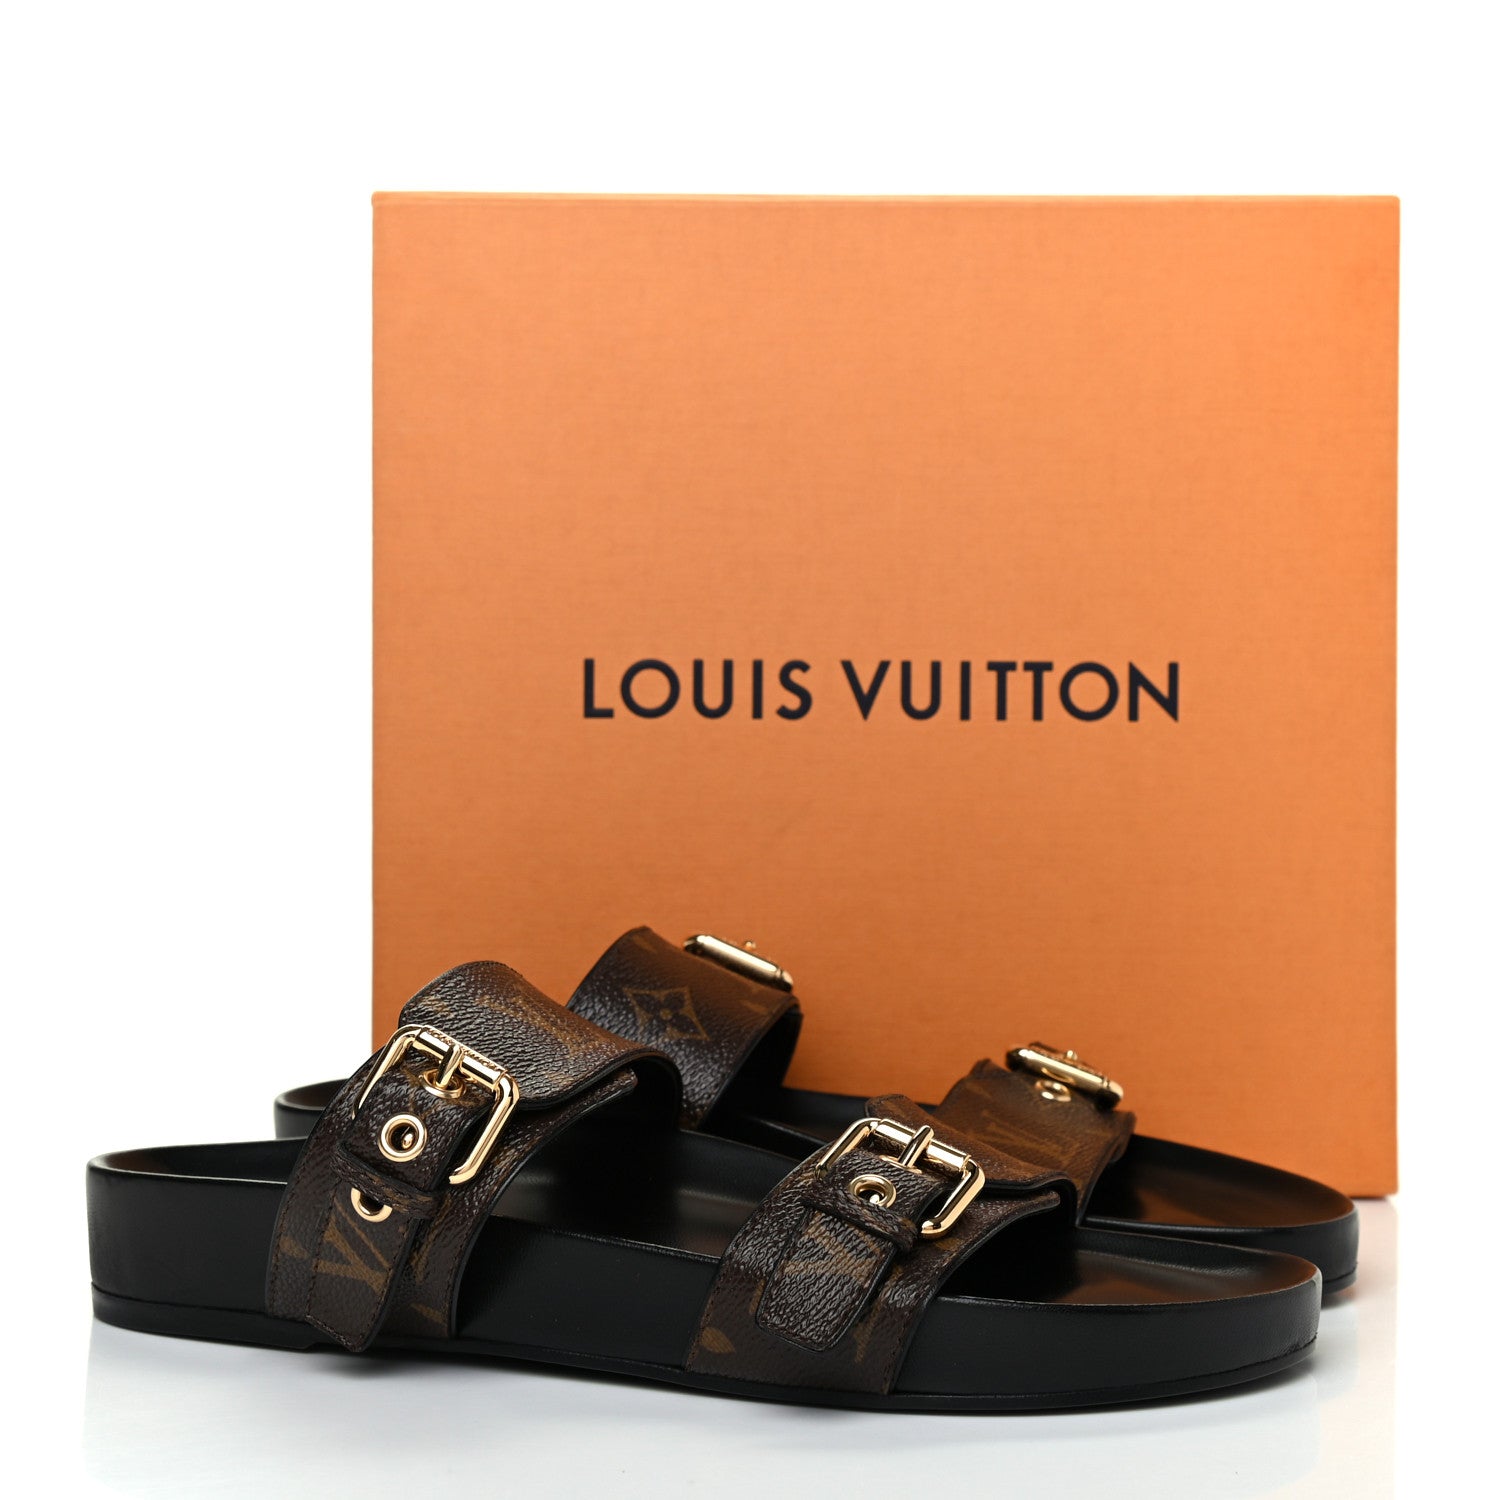 Louis Vuitton Mules (Bom Dia Flat Comfort Mule)